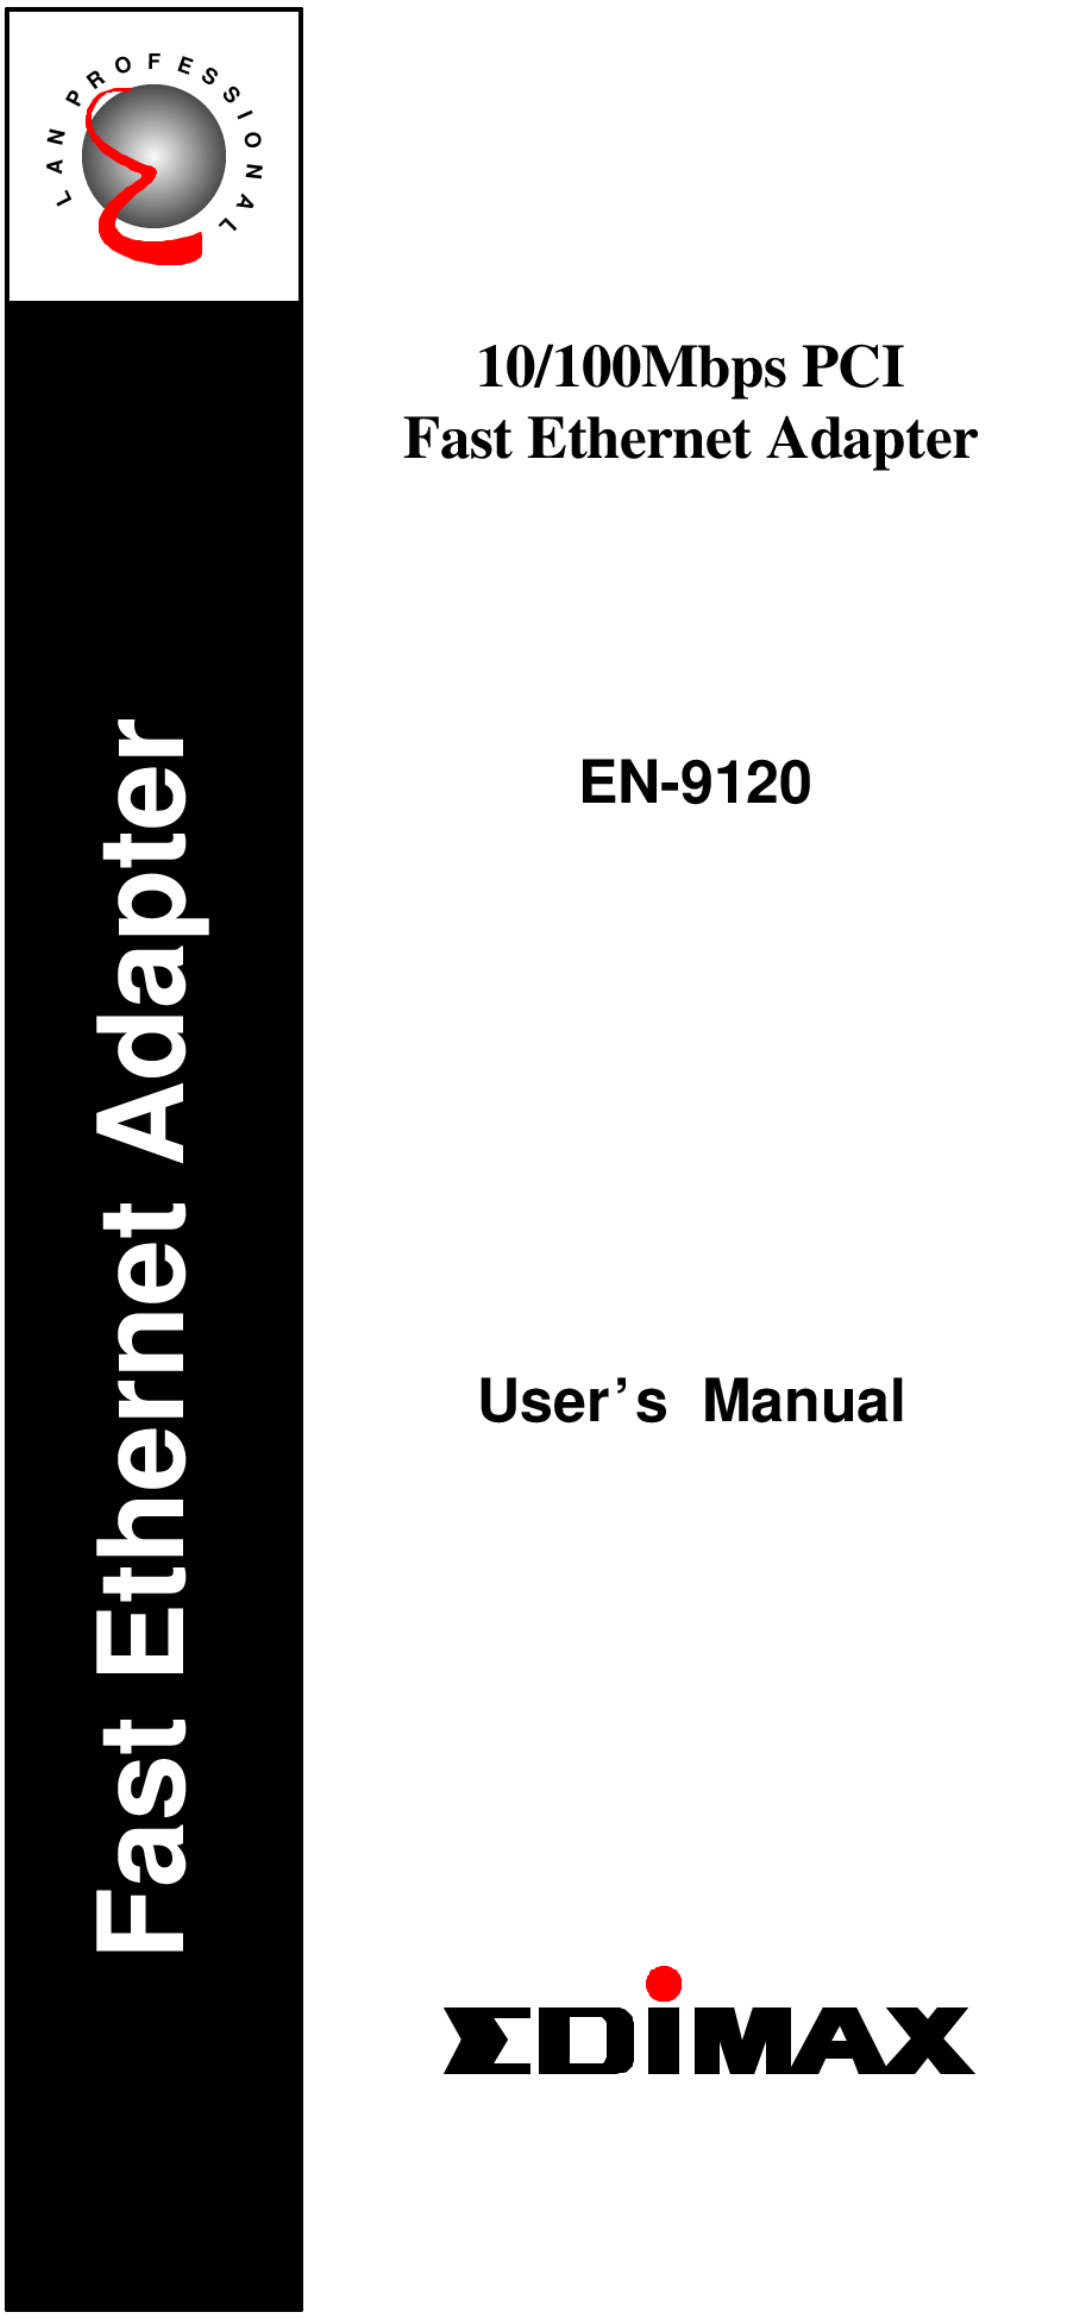 Skyworks user manual 10/100Mbps PCI Fast Ethernet Adapter, EN-9120 User’s Manual 